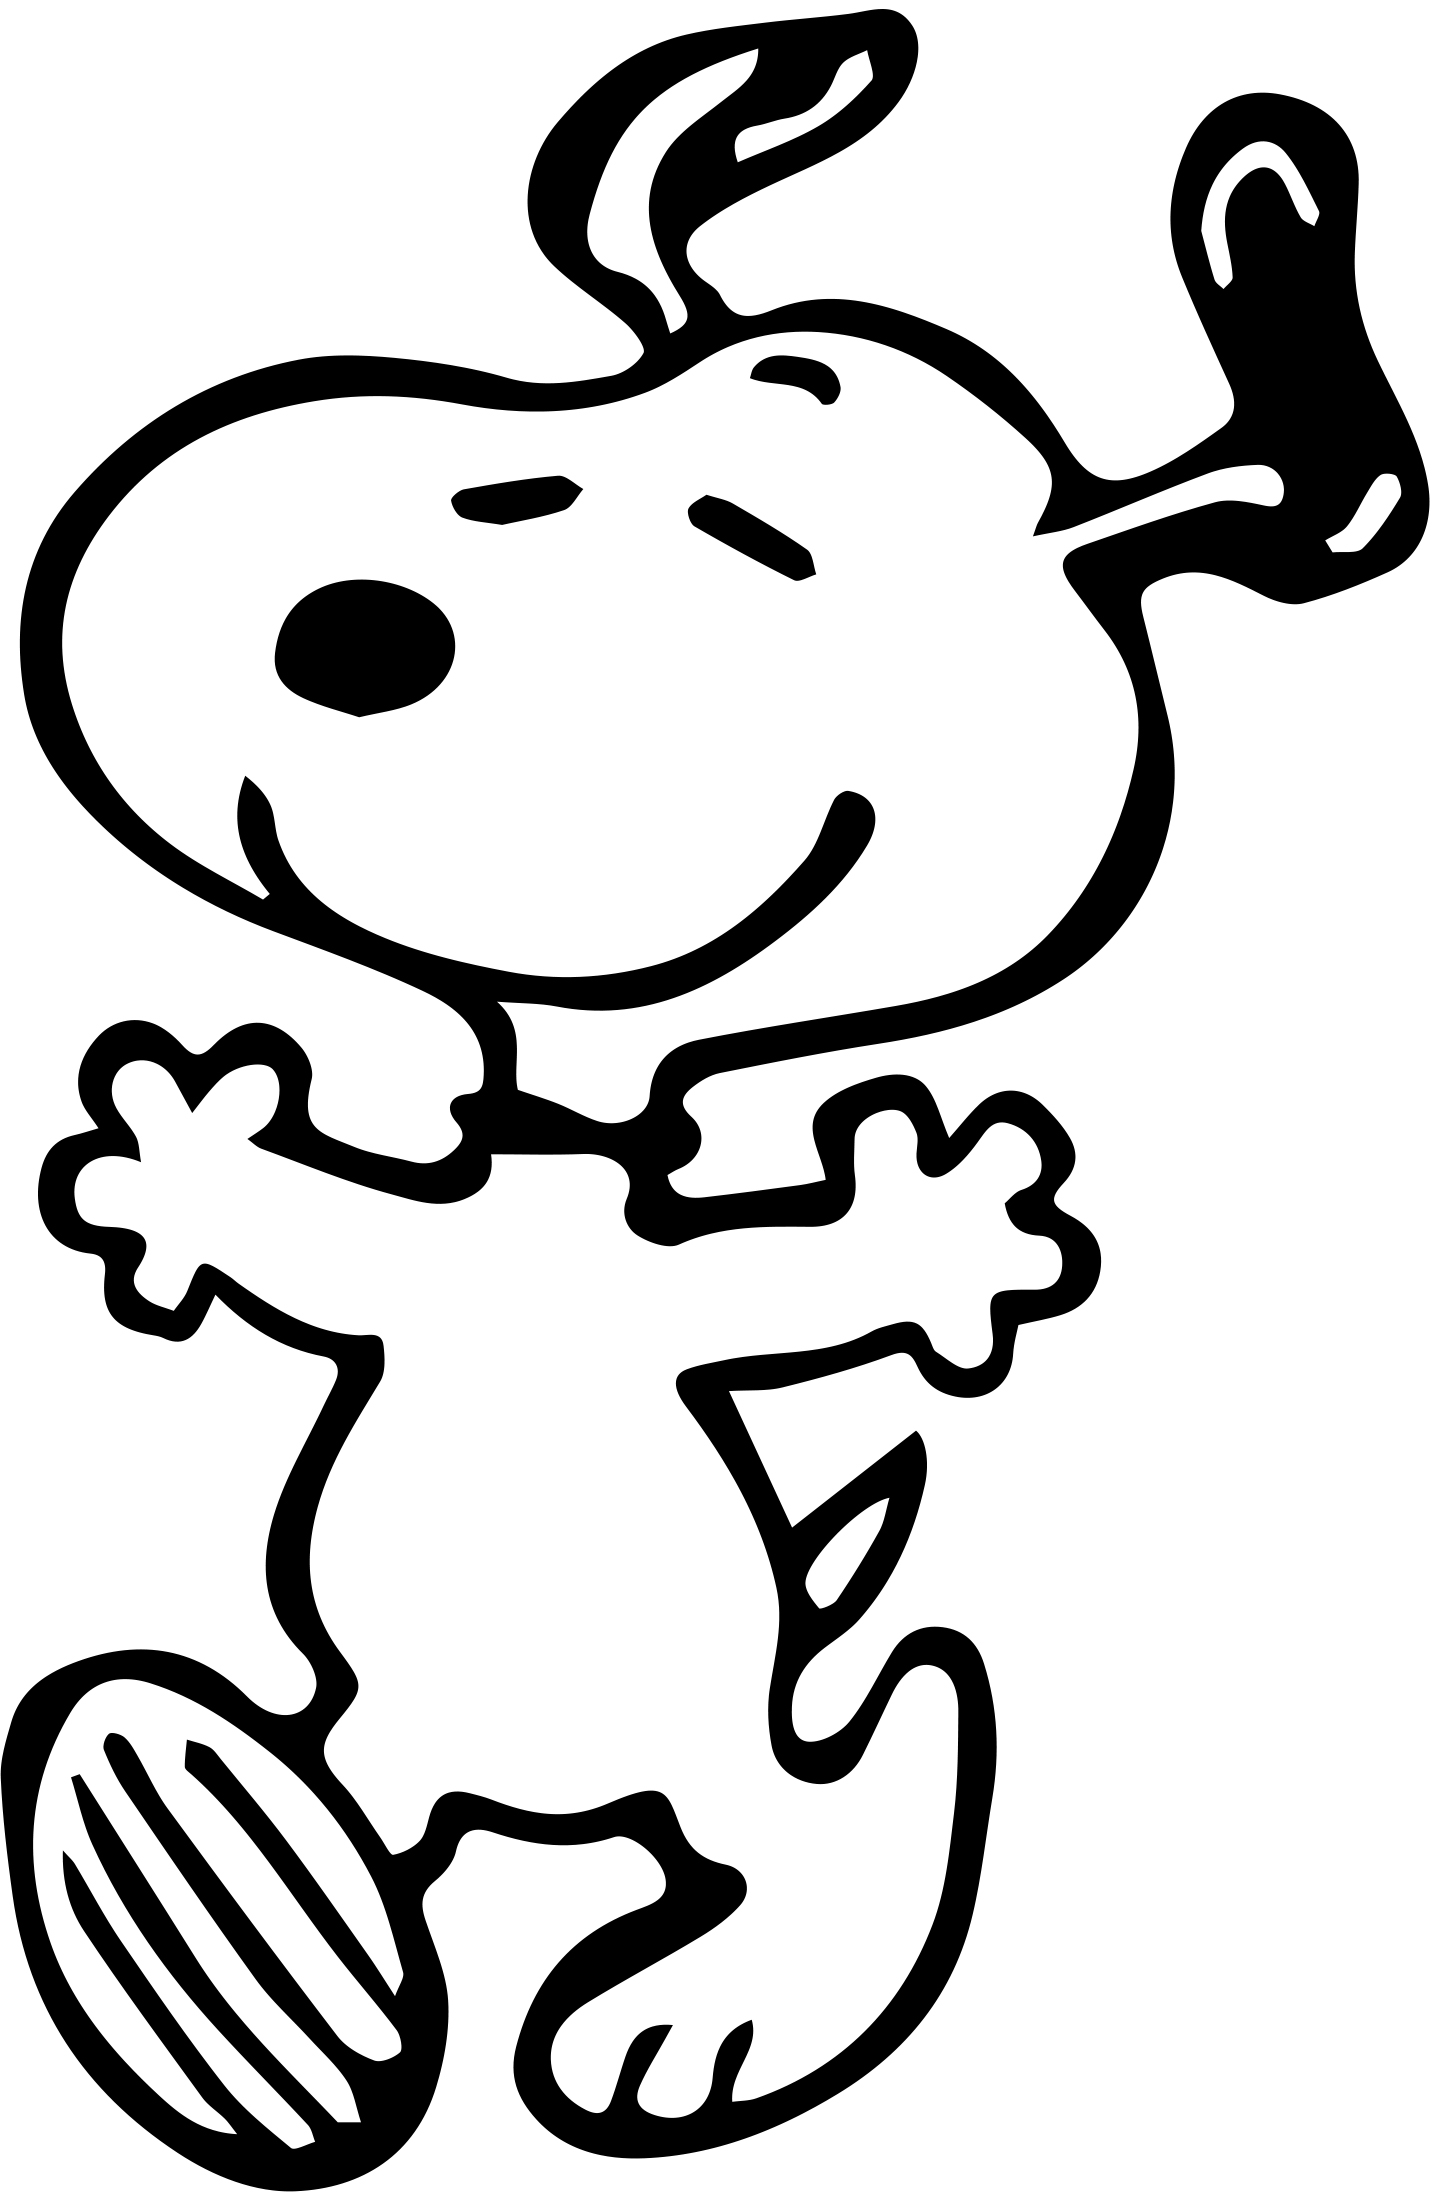 https://www.geekcals.com/wp-content/uploads/2015/09/Dancing-Snoopy.jpg